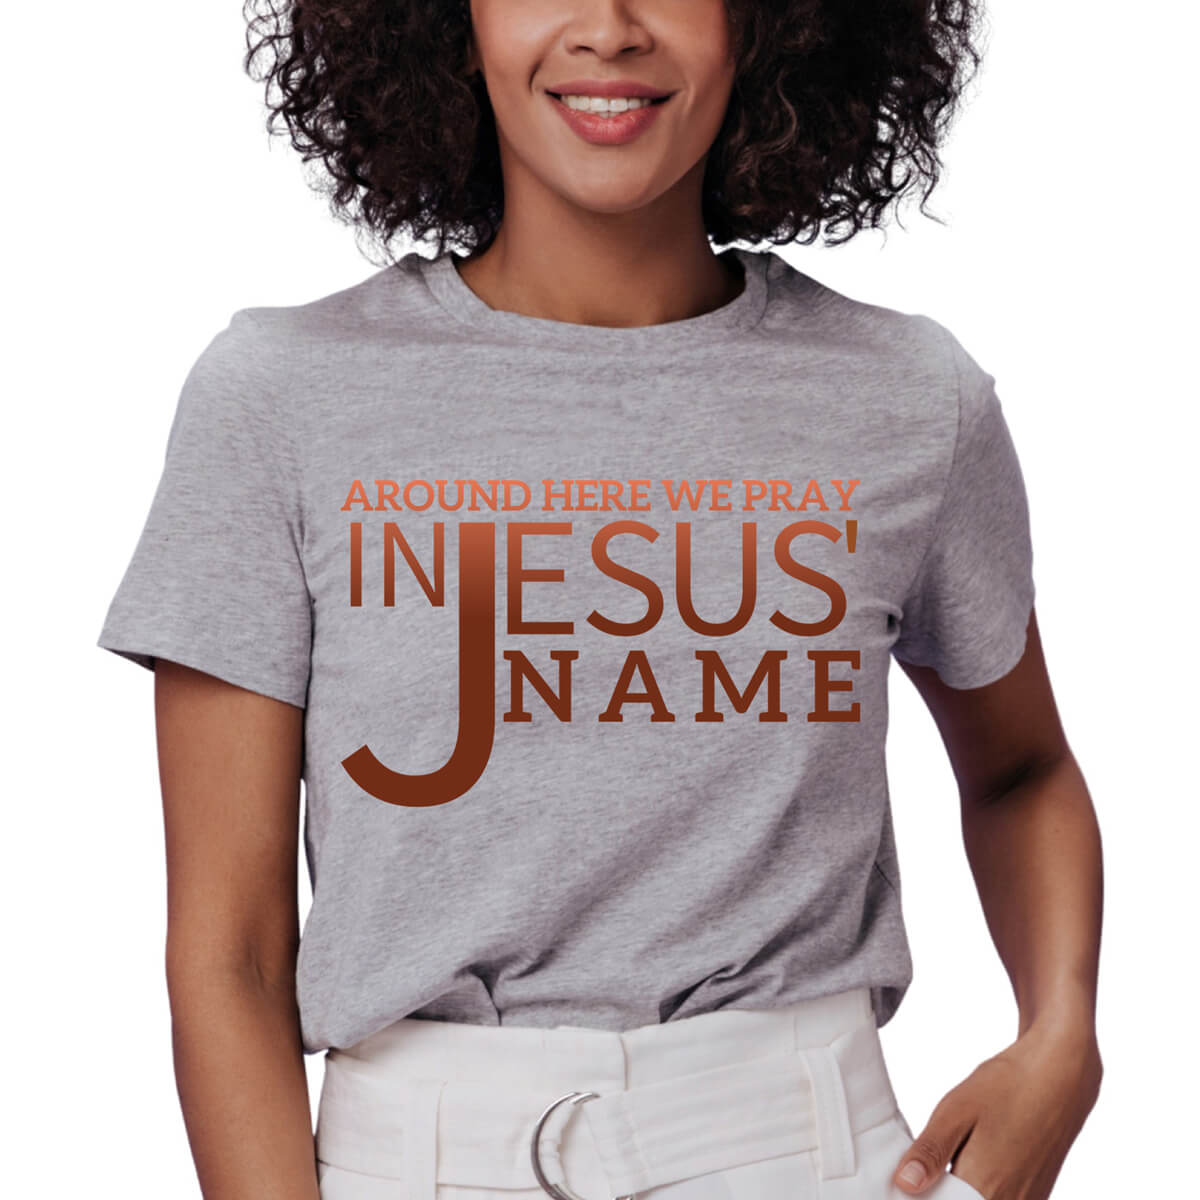 Around Here We Pray In Jesus' Name T-Shirt